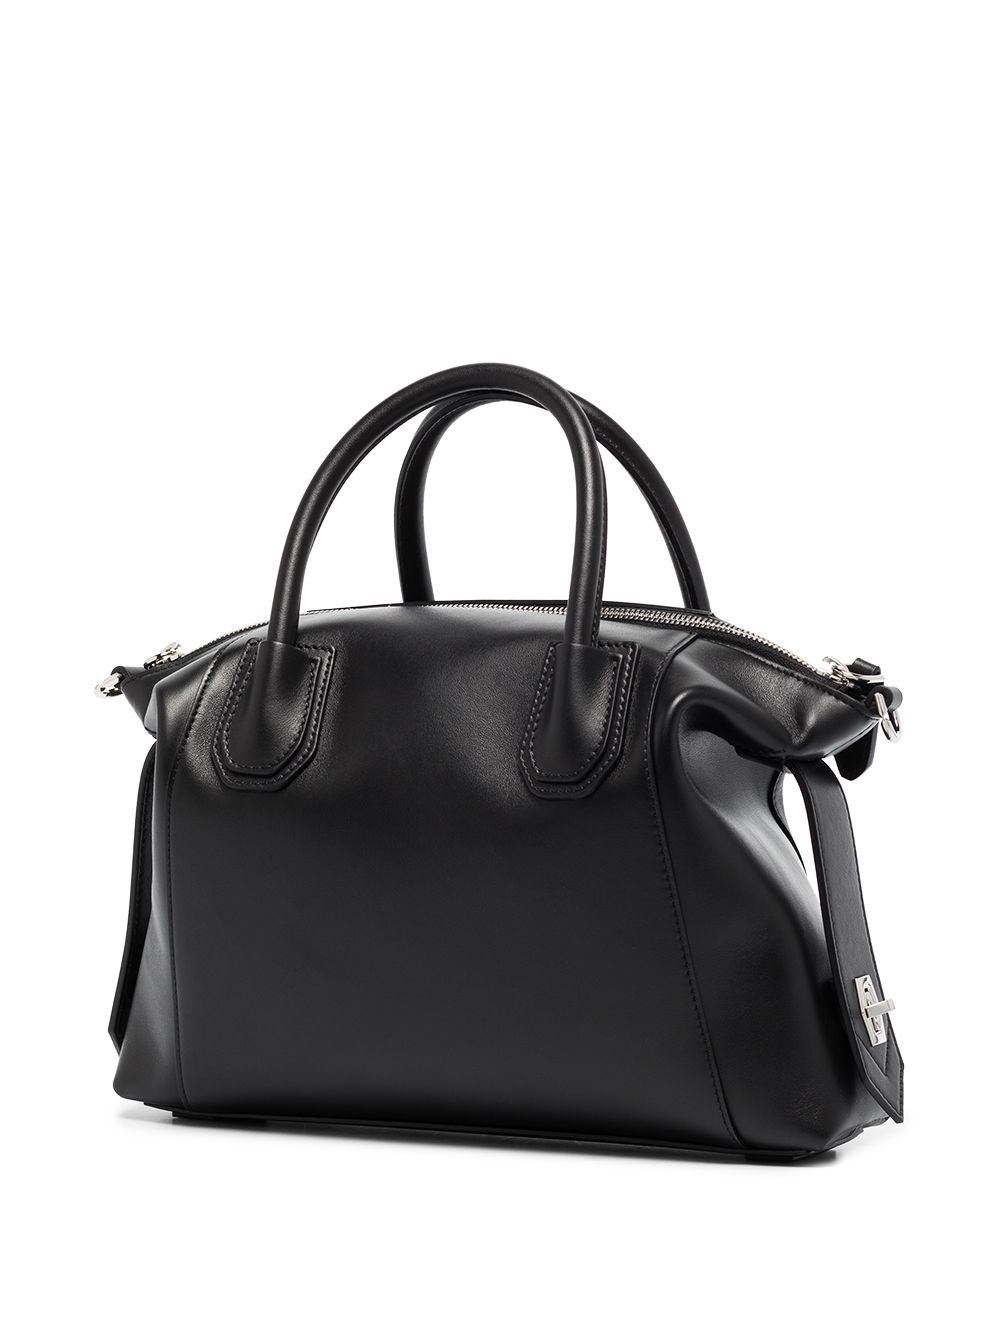 фото Givenchy маленькая сумка antigona